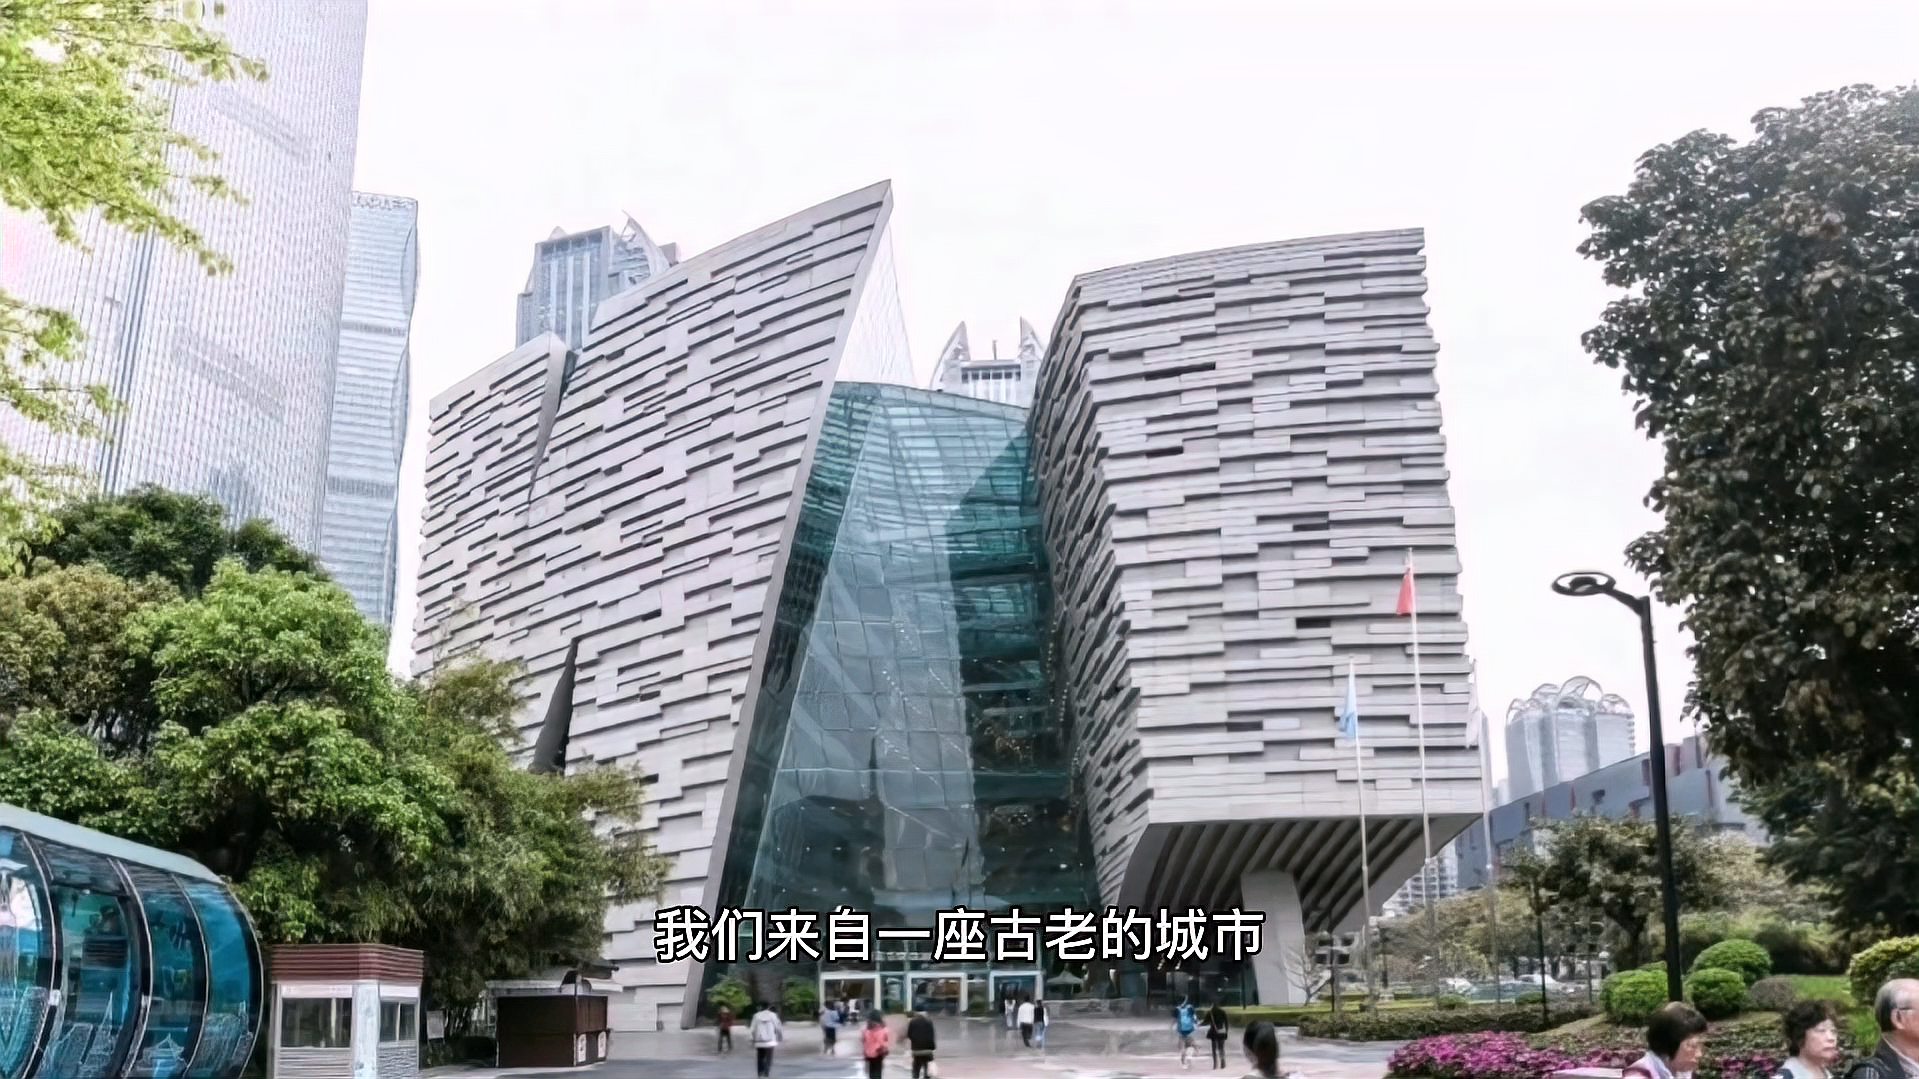 [图]广州欢迎你,共同的想法我们在一起,一起努力建设美丽的城市